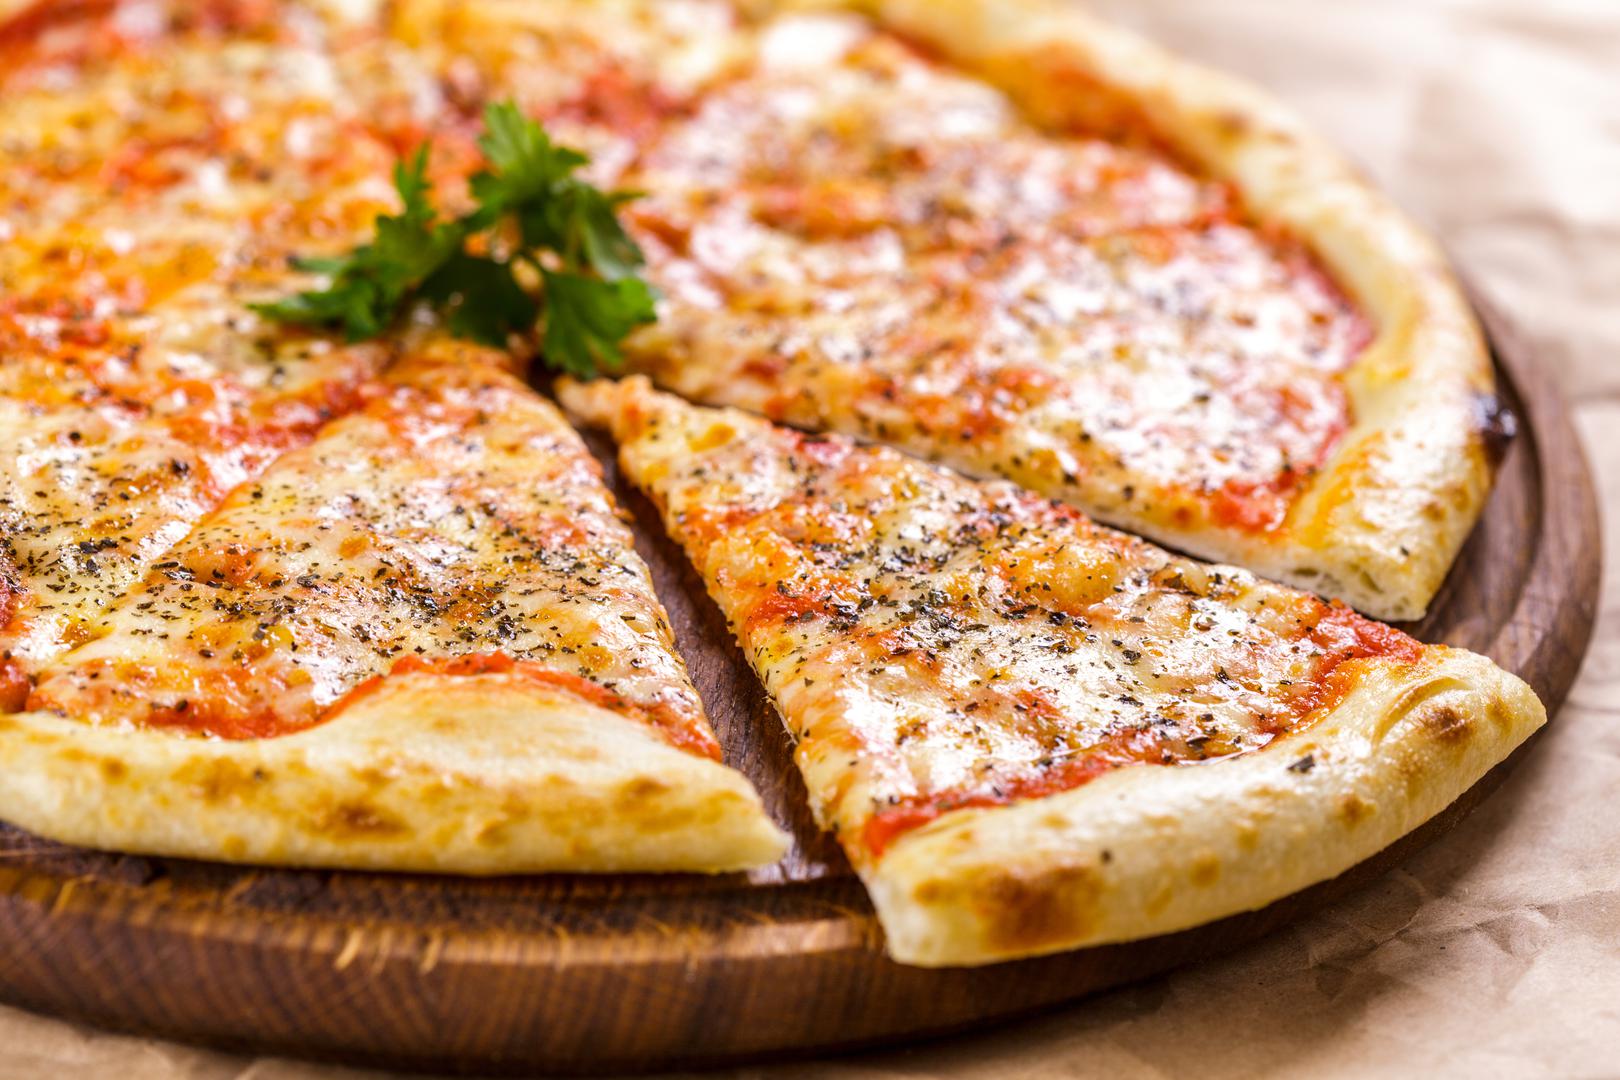 Pizza: Loše vijesti za ljubitelje pizze - kasnonoćni komad pizze je užasna ideja ako imate problema sa spavanjem. Stručnjak za medicinu spavanja dr. Ruchir Patel rekao je da umak od rajčice može biti okidač refluksa kiseline na isti način na koji to može učiniti začinjena hrana. Zapravo, sva hrana napravljena s rajčicama mogla bi vas držati budnima noću. I ne samo to, neki dodaci za pizzu, poput feferona, sadrže puno natrija i zasićenih masti, kojima treba dugo vremena da se probave i stoga mogu uzrokovati probleme sa spavanjem. Dr. Patel preporučuje izbjegavanje pizze  do tri sata prije spavanja.